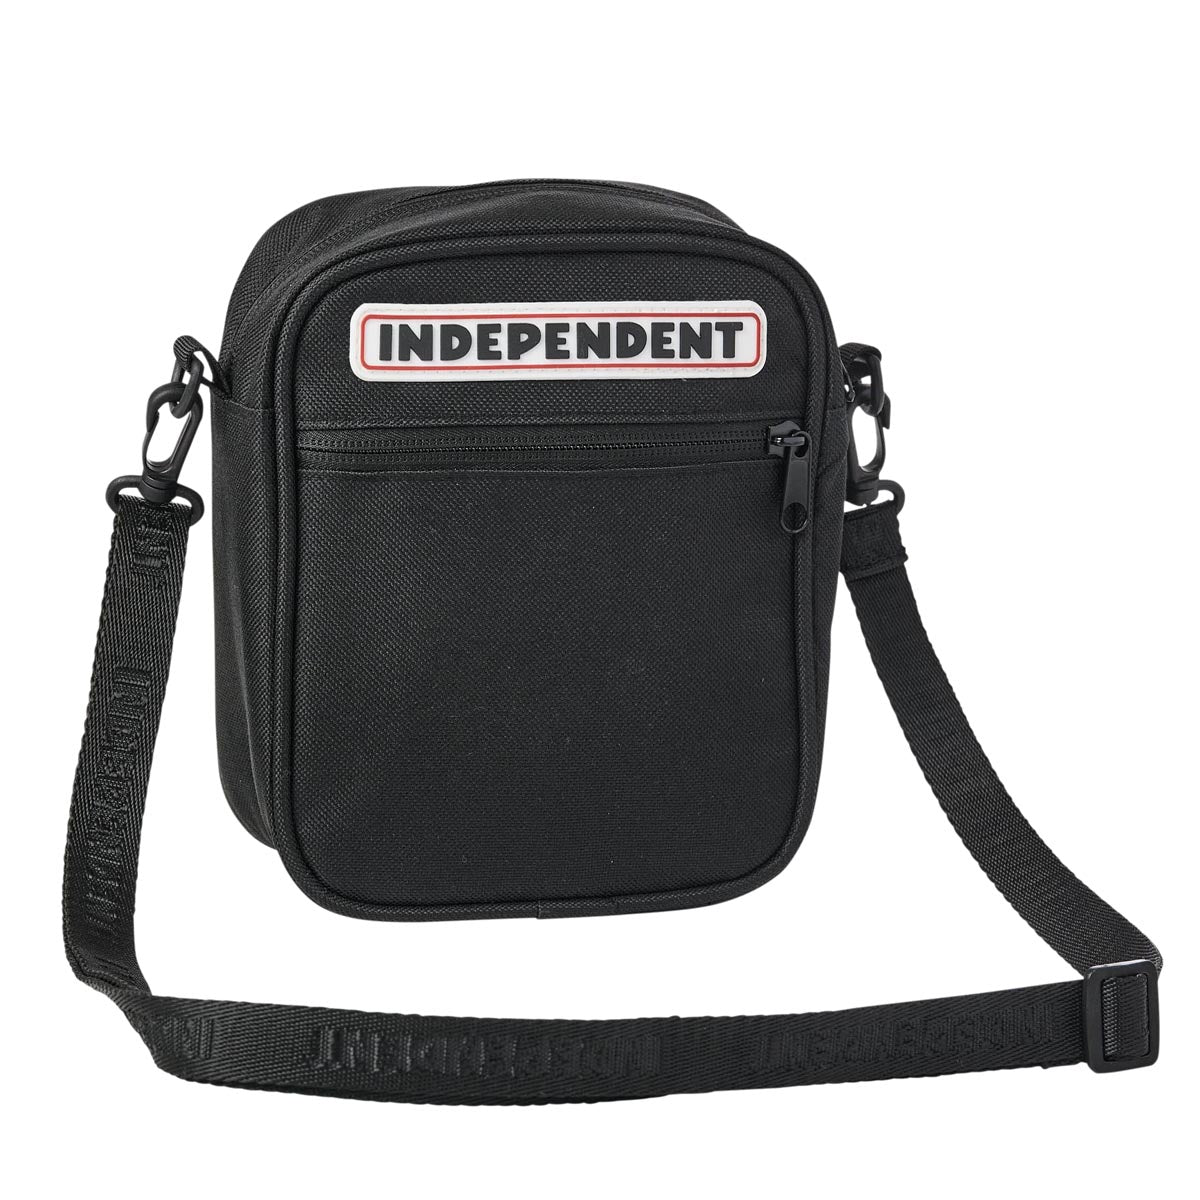 Independent Bar Logo Side Bag - Black image 1